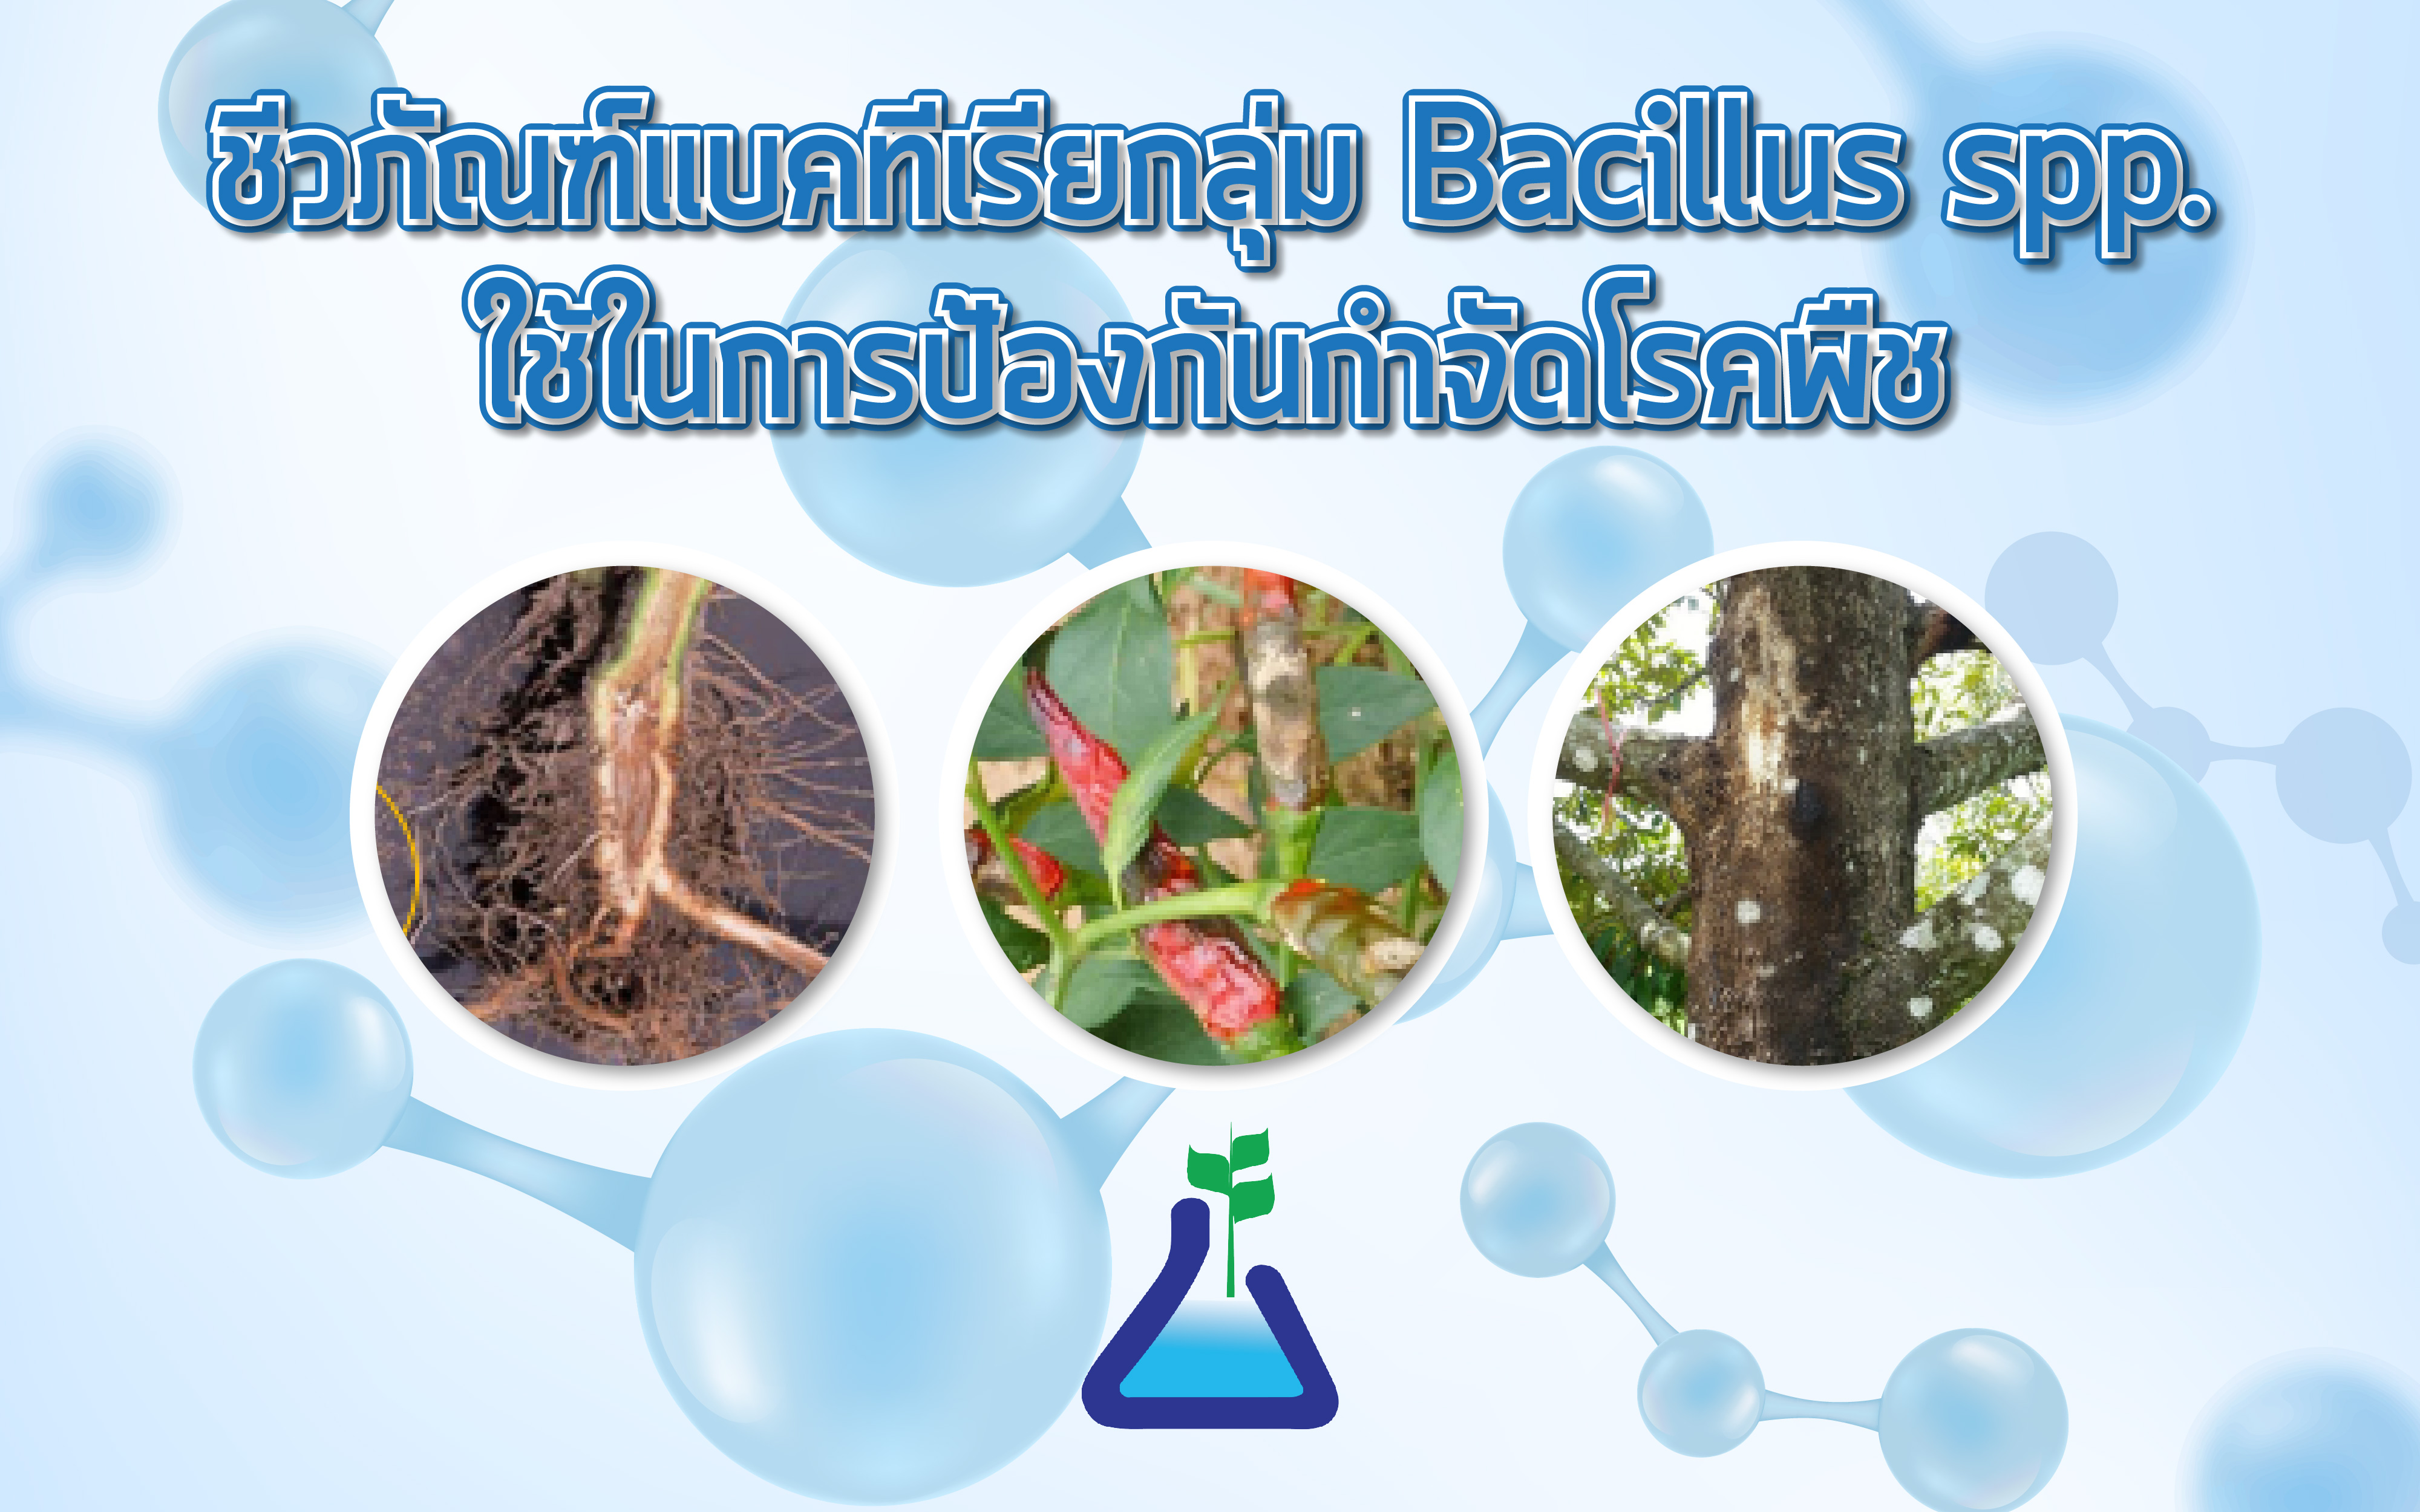 ชีวภัณฑ์แบคทีเรียกลุ่ม Bacillus subtilis spp. ใช้ในการป้องกันกำจัดโรคพืช